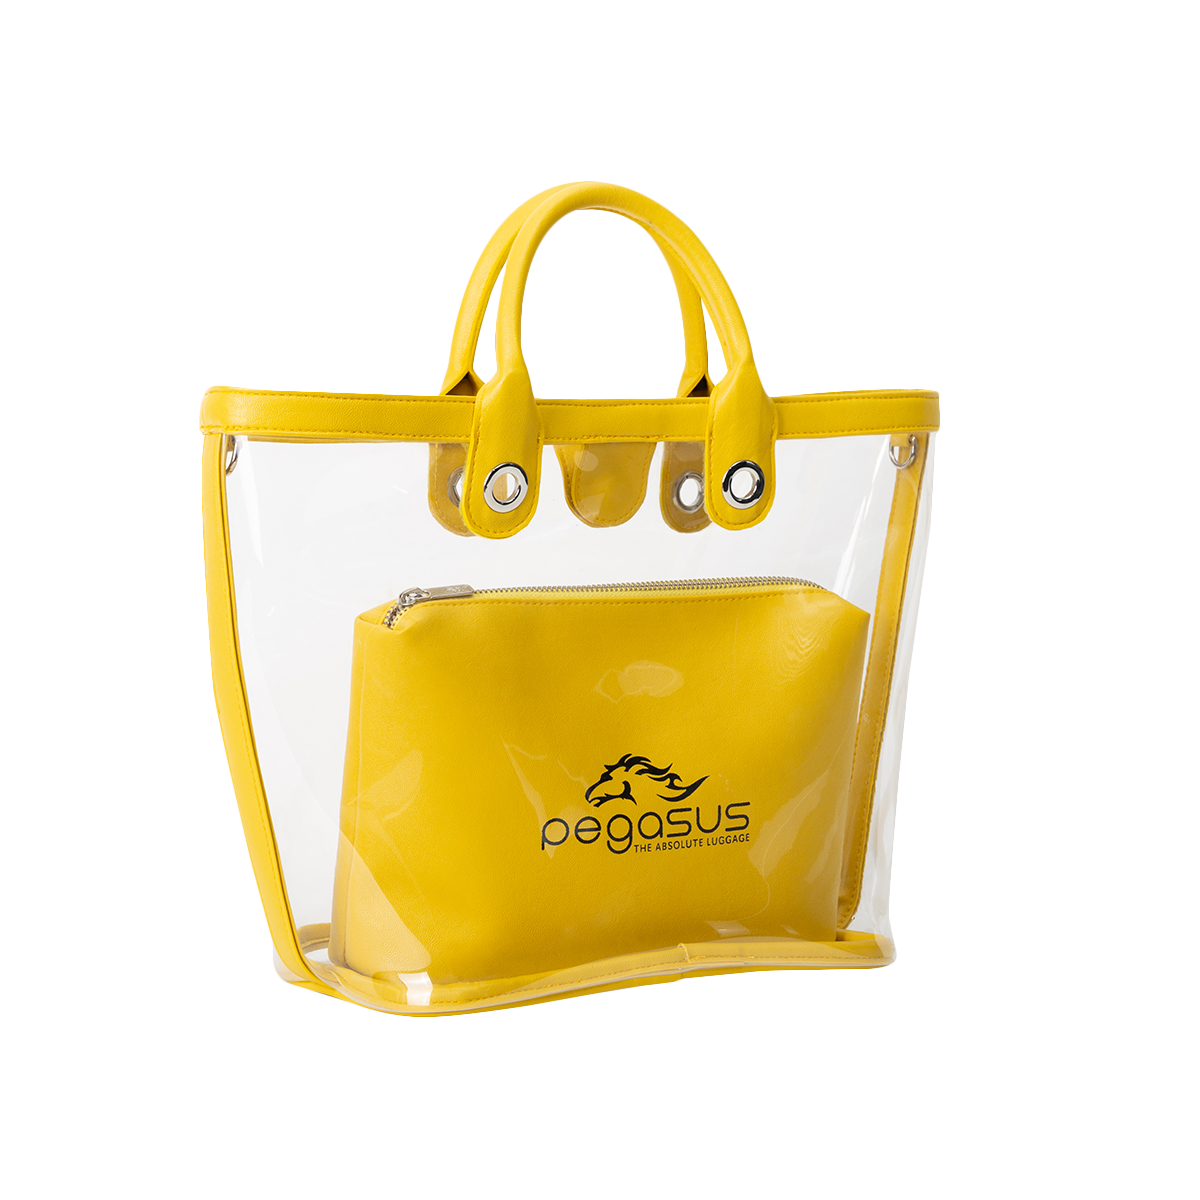  กระเป๋ารุ่น Gypsy Tote Bag Yellow